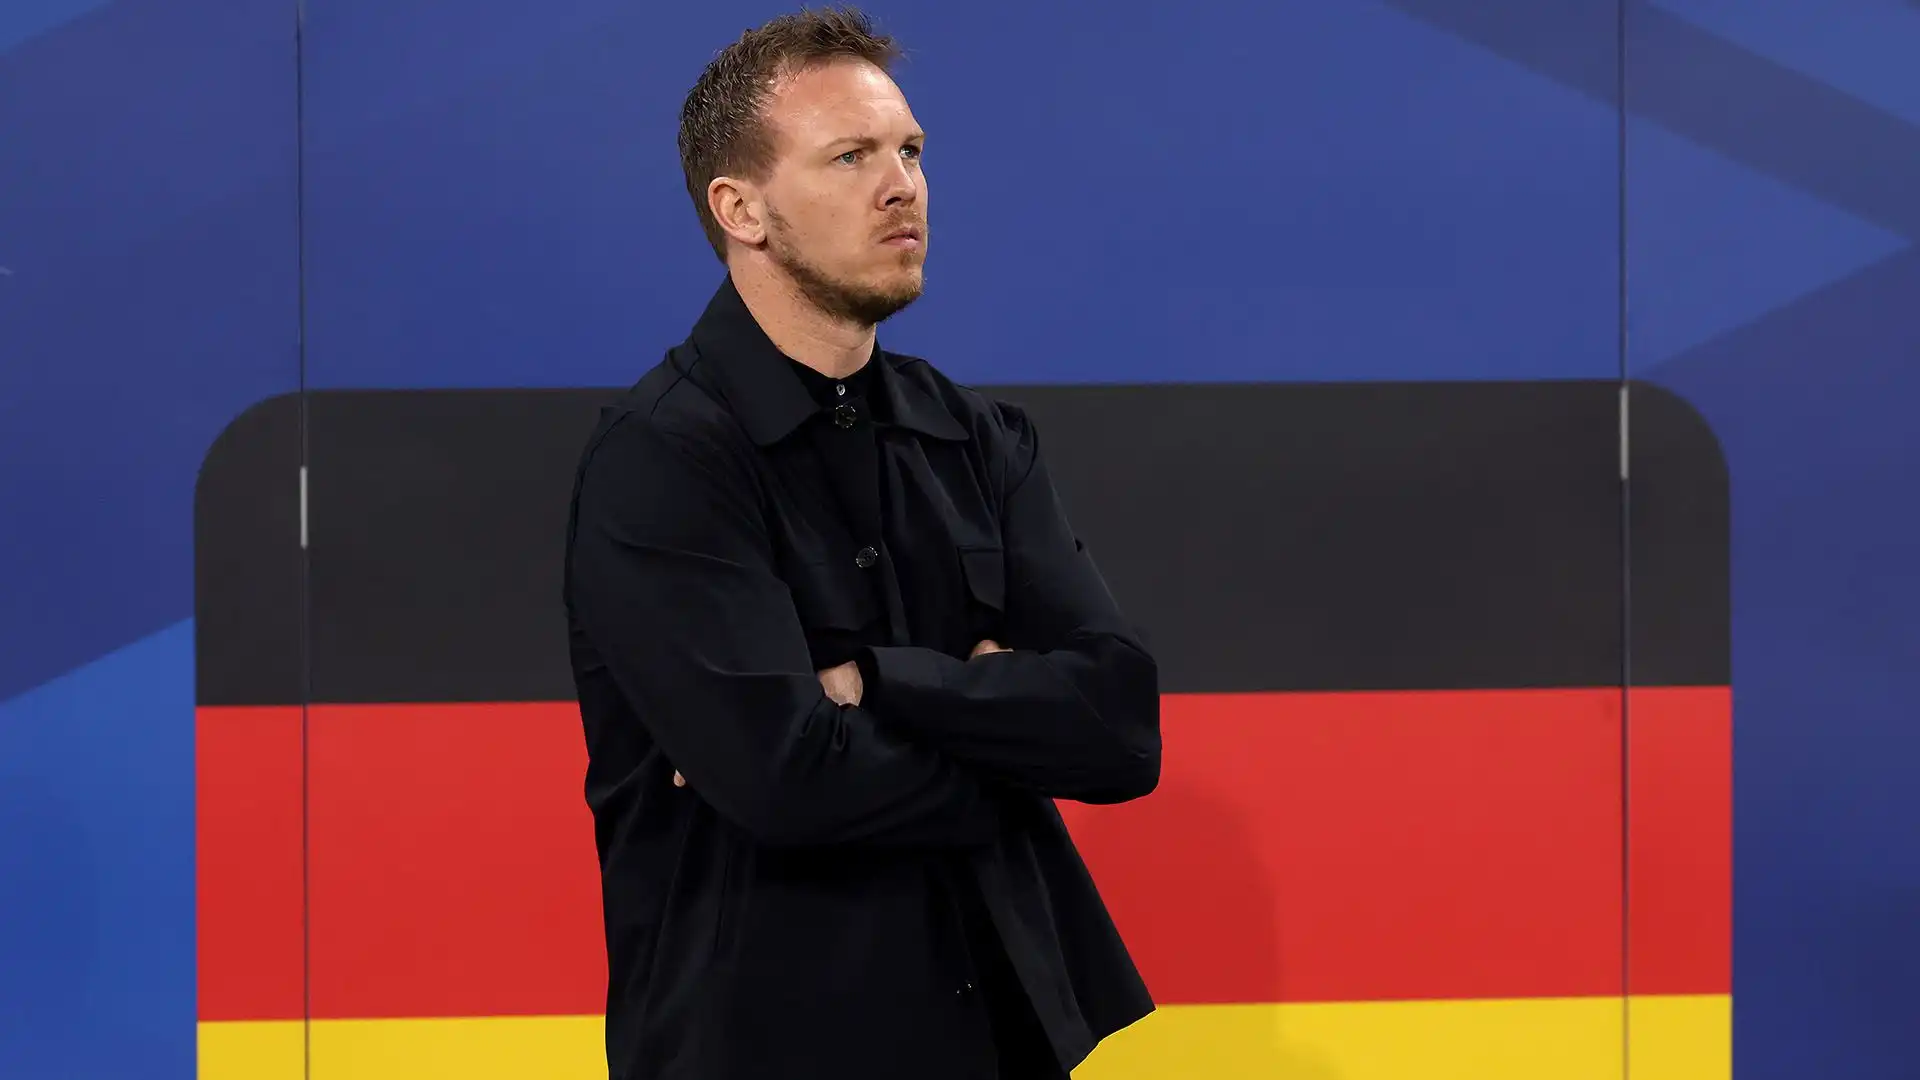 L'attuale selezionatore della Nazionale tedesca ha un contratto con la Federazione fino al termine degli Europei